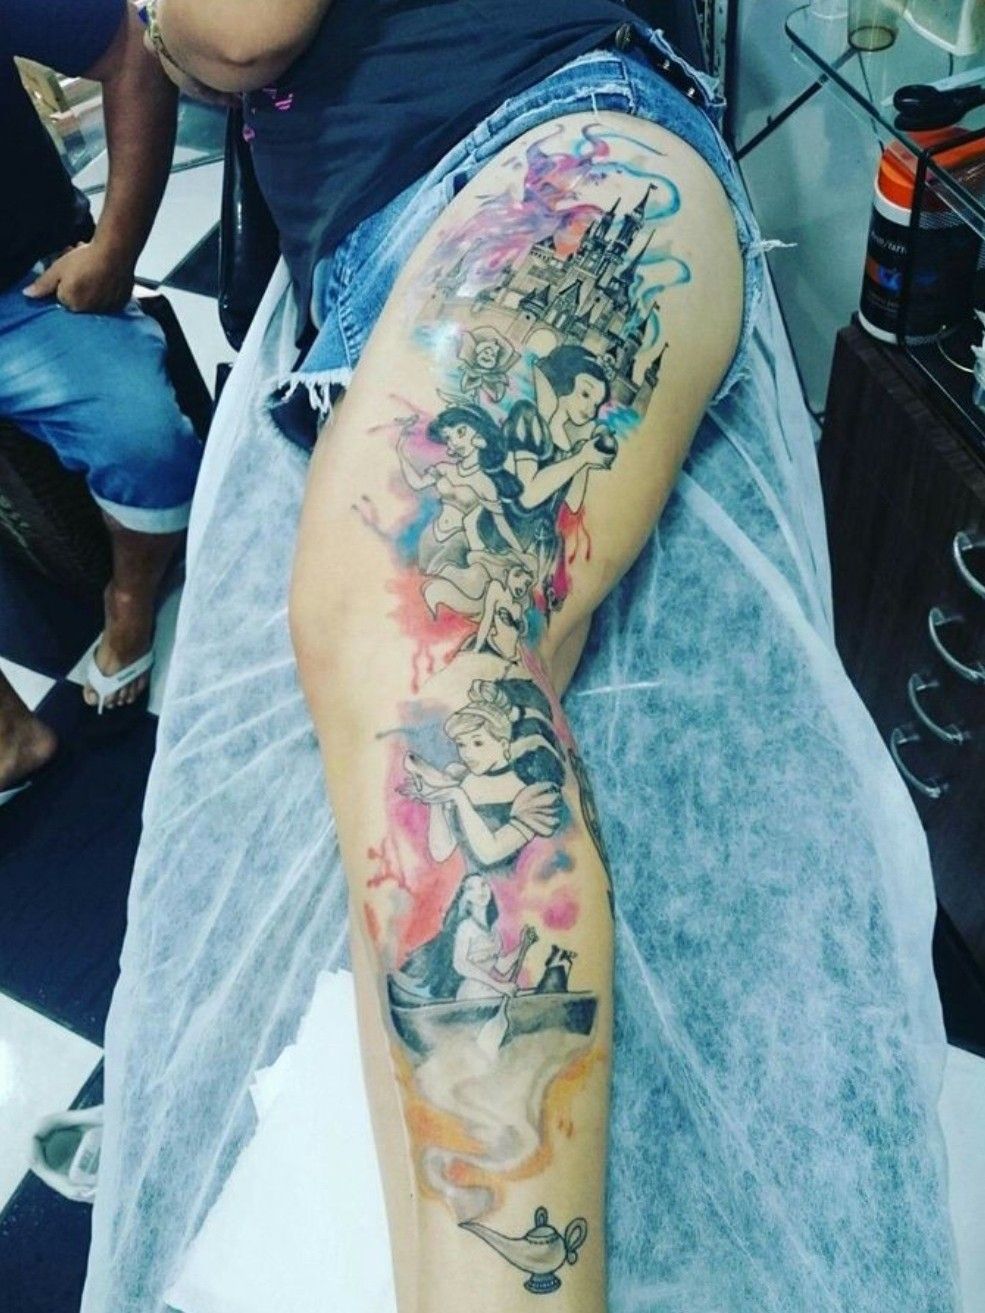 disney princess jasmine with tattoos